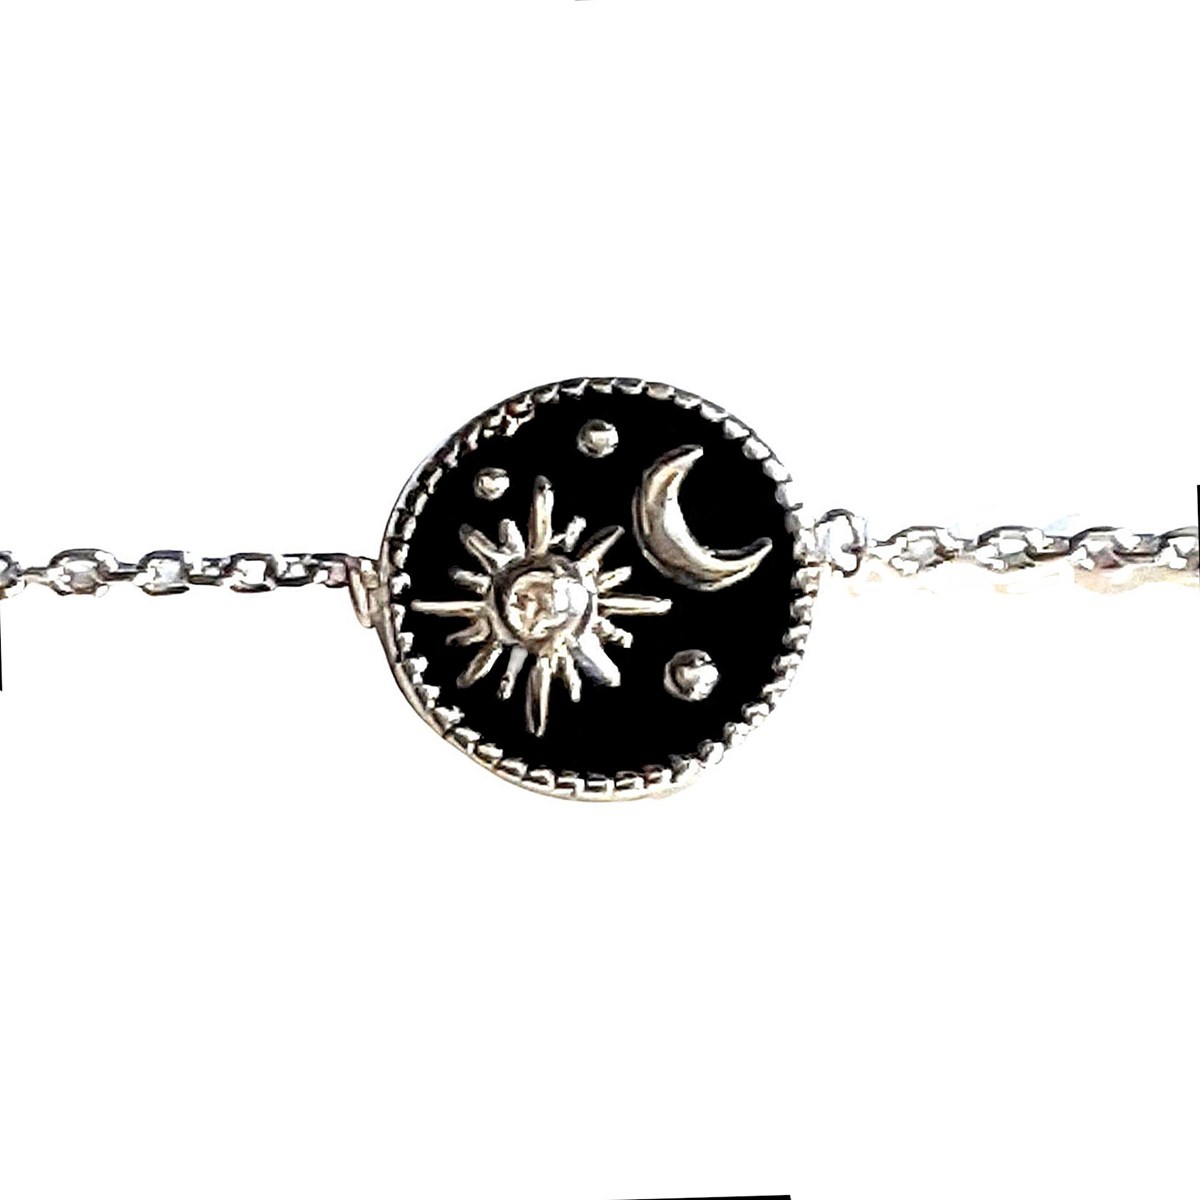 Bracelet breloque email noir lune étoile en argent 925°/00 - 18cm